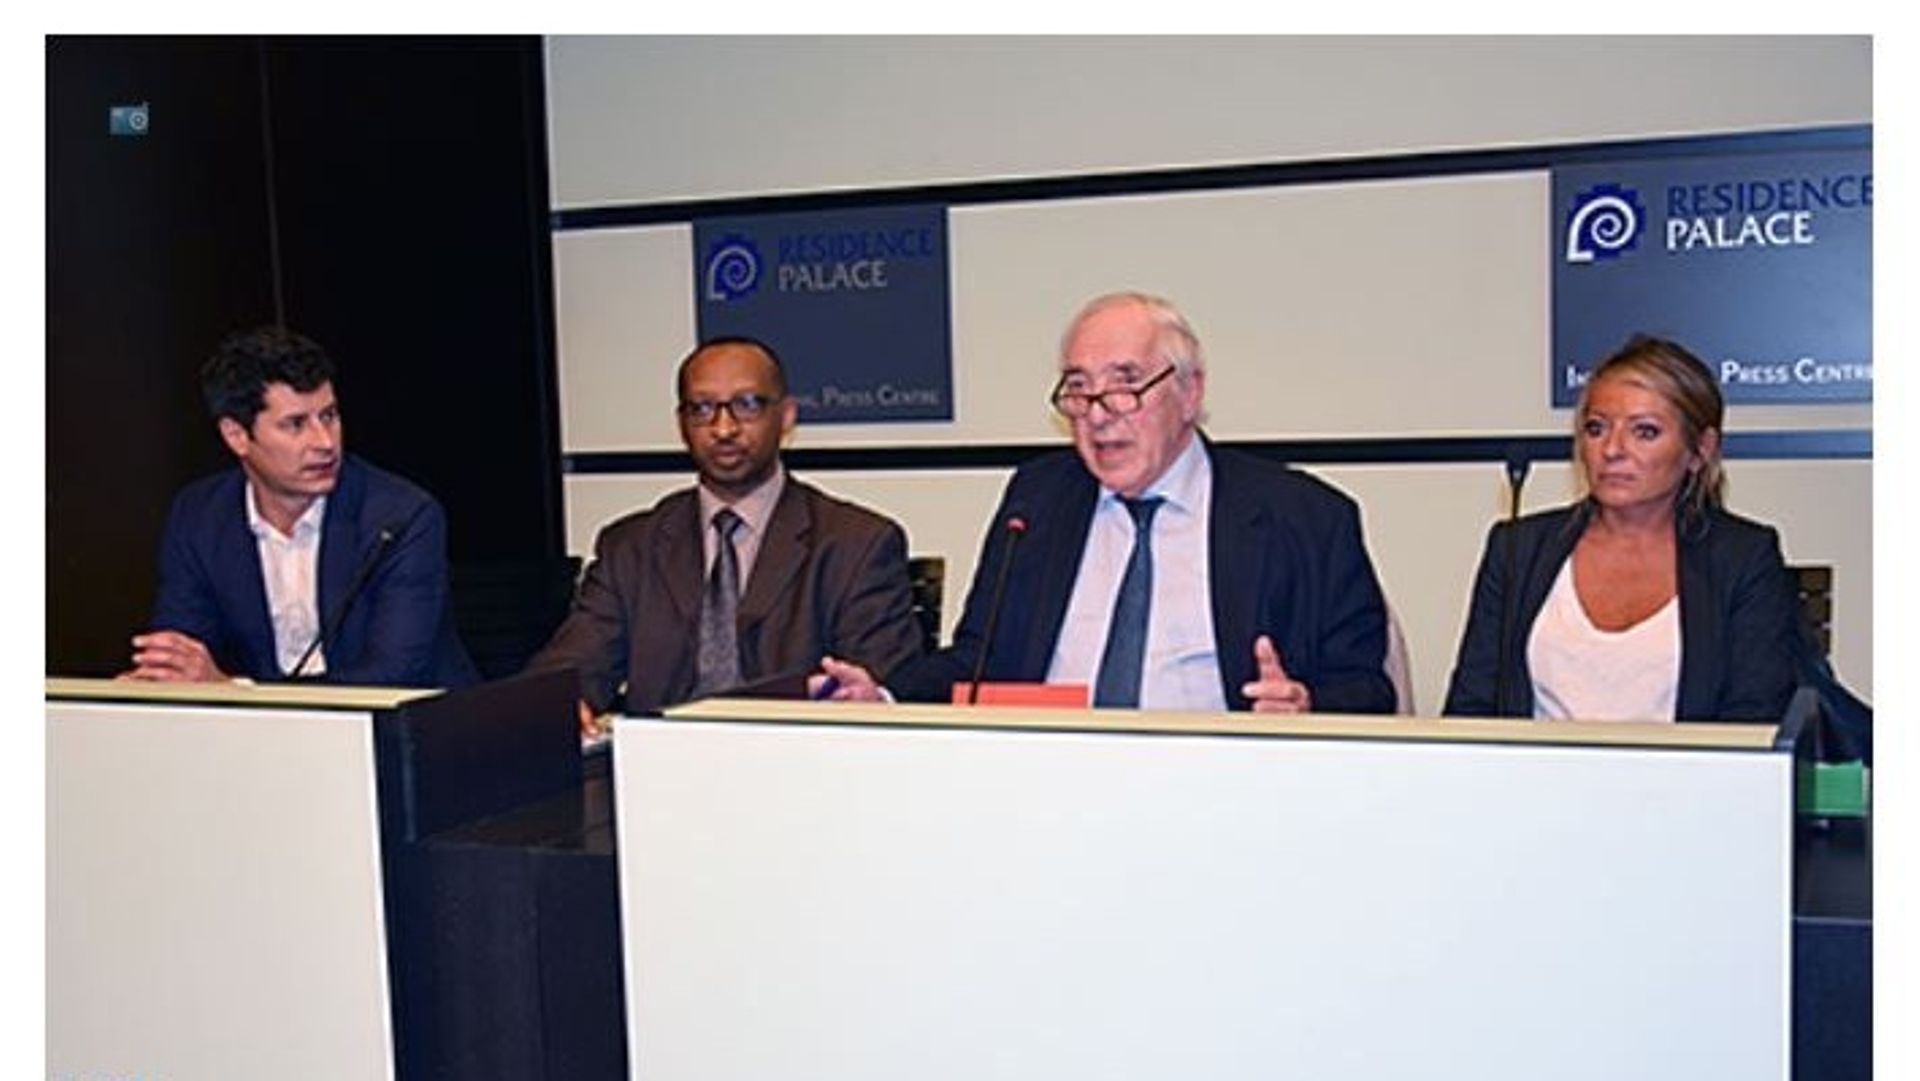 Image de la conférence de presse des avocats belges, lors d’une conférence à Bruxelles, en 2017. Extrait du site Maroc Diplomatique.